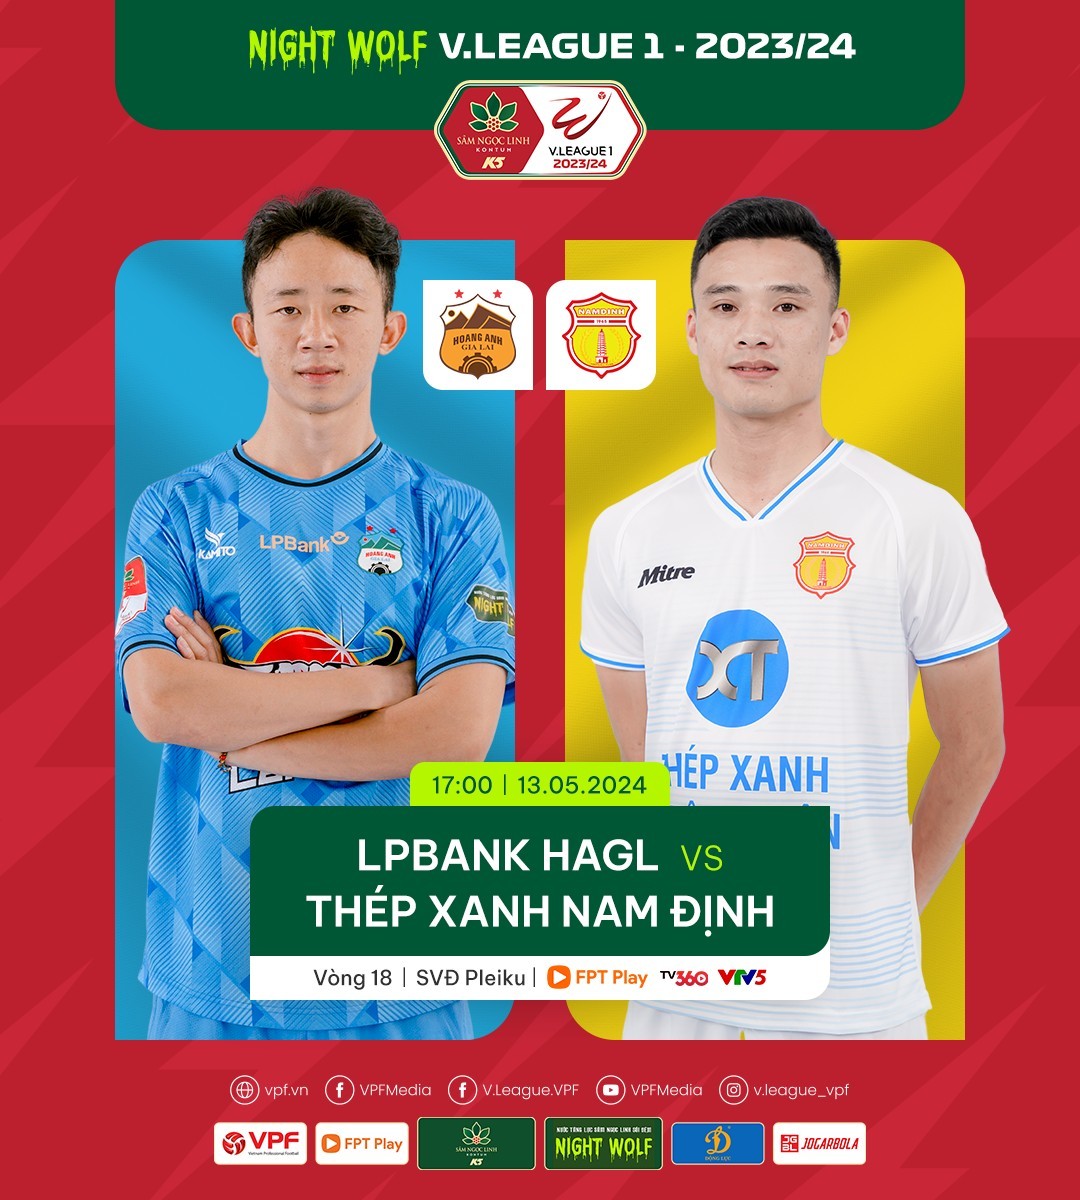 Nhận định bóng đá HAGL và Nam Định (17h00 ngày 13/05), Vòng 18 V-League 2023/2024